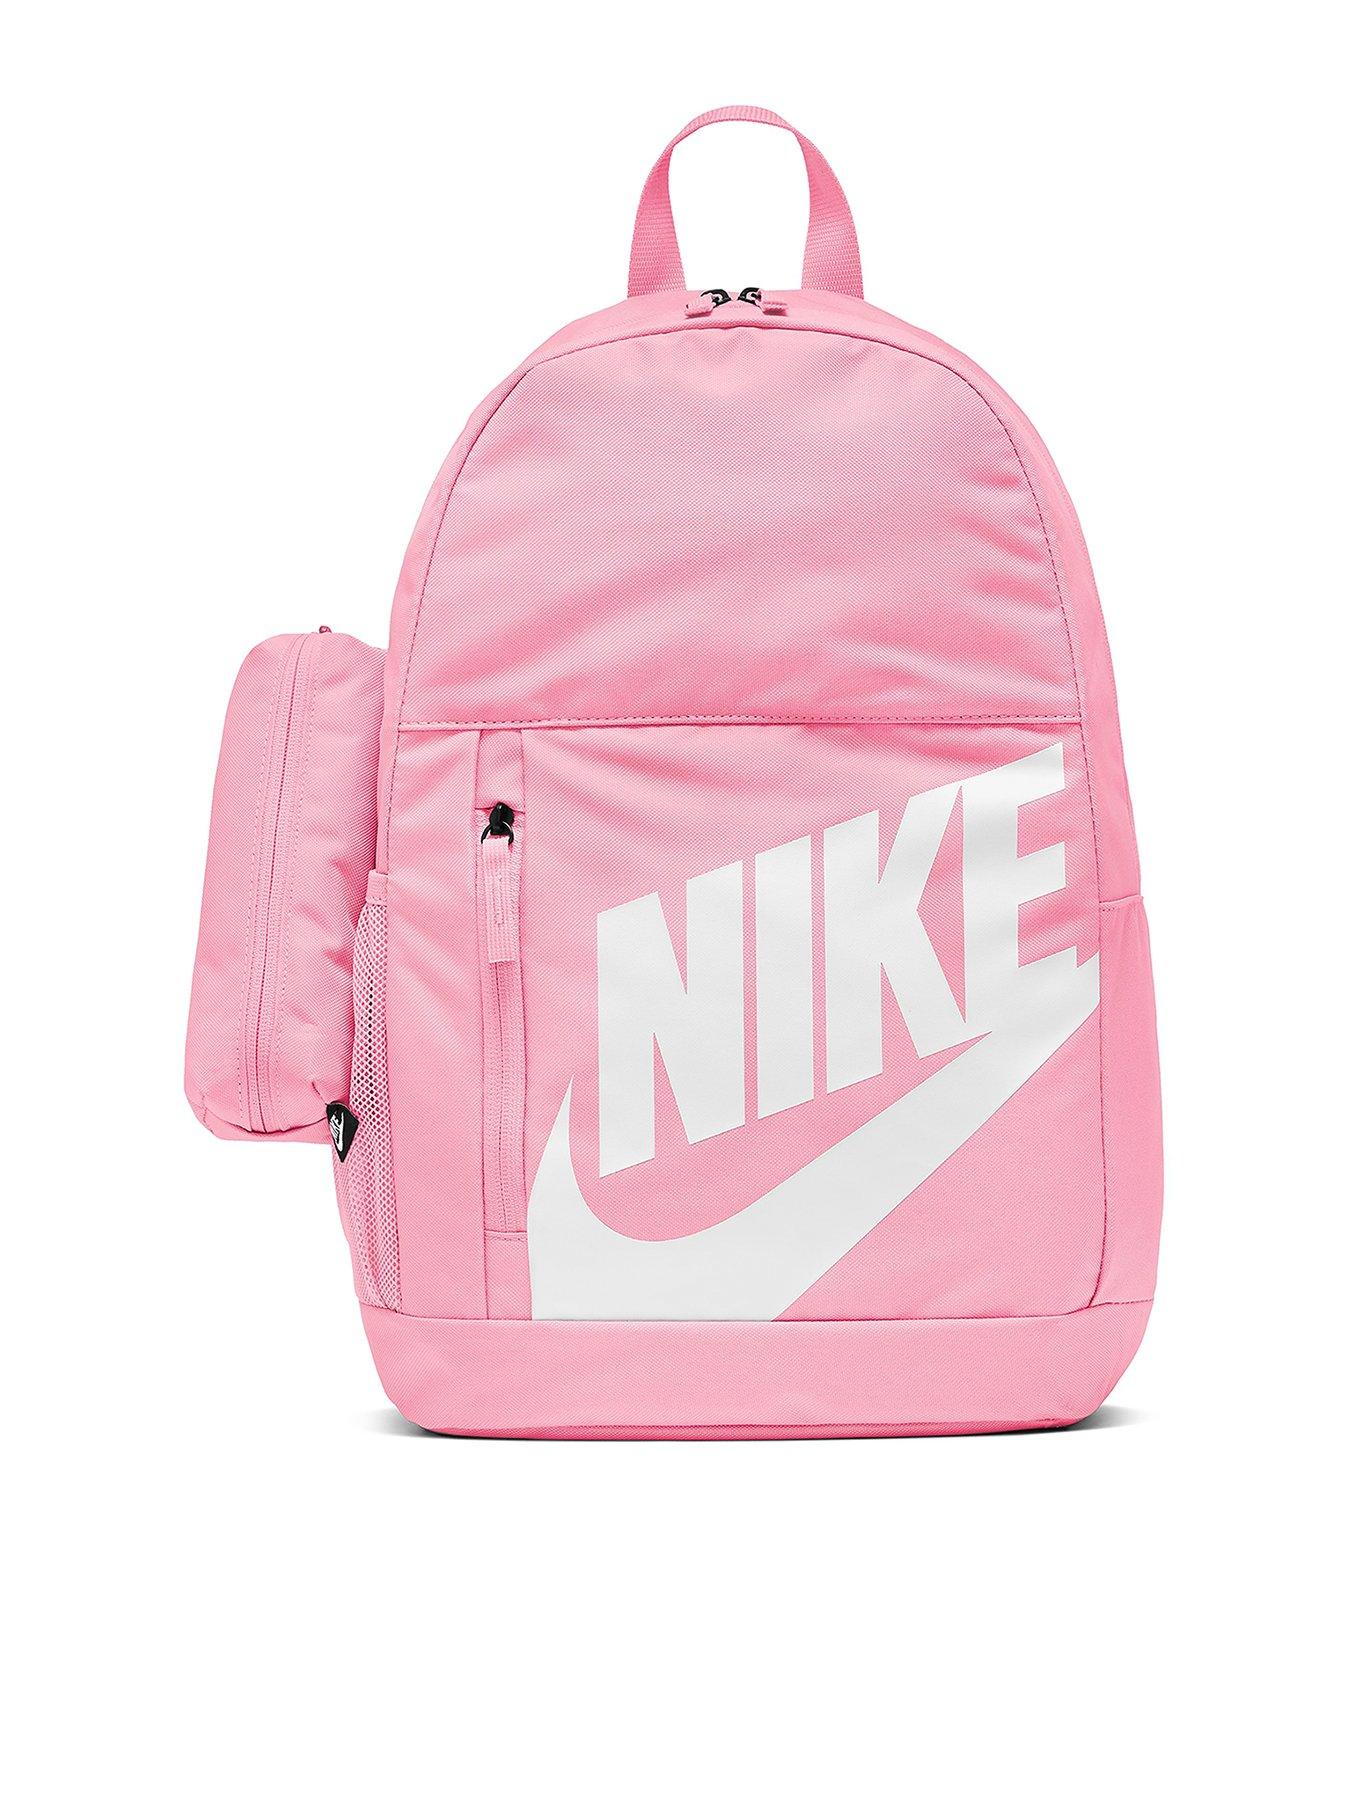 pink nike backpack